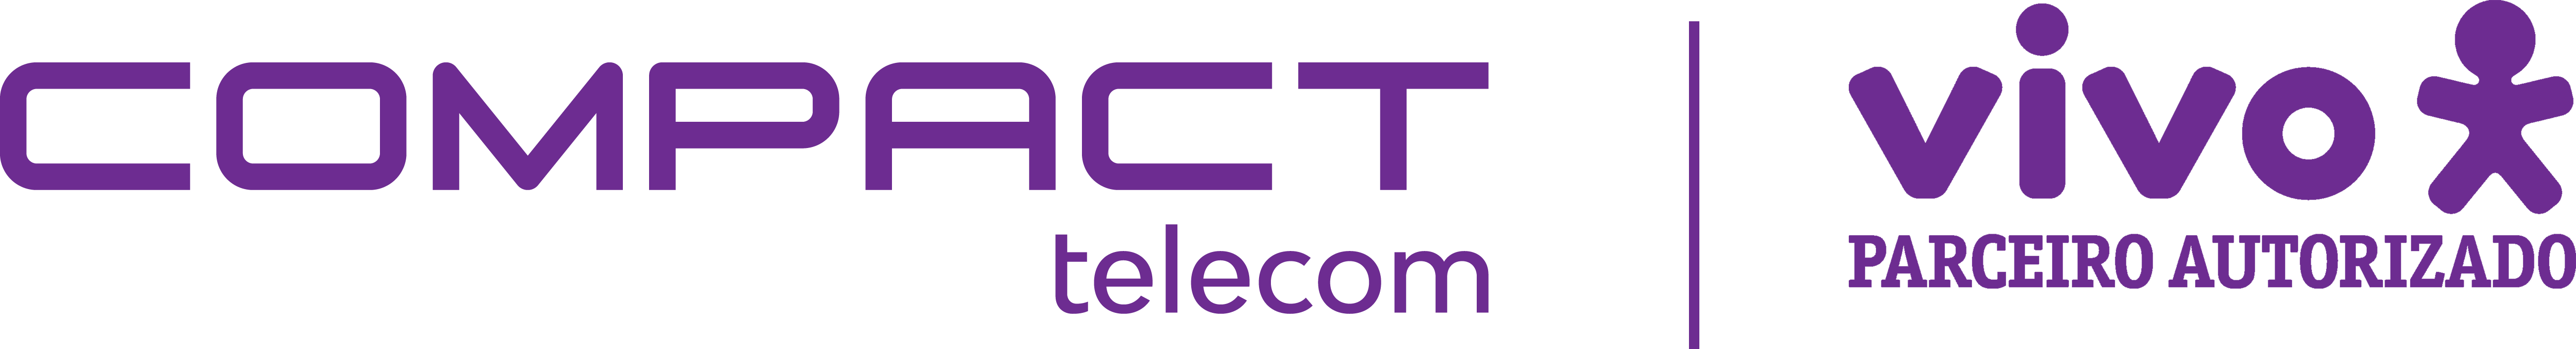 Compact Telecom